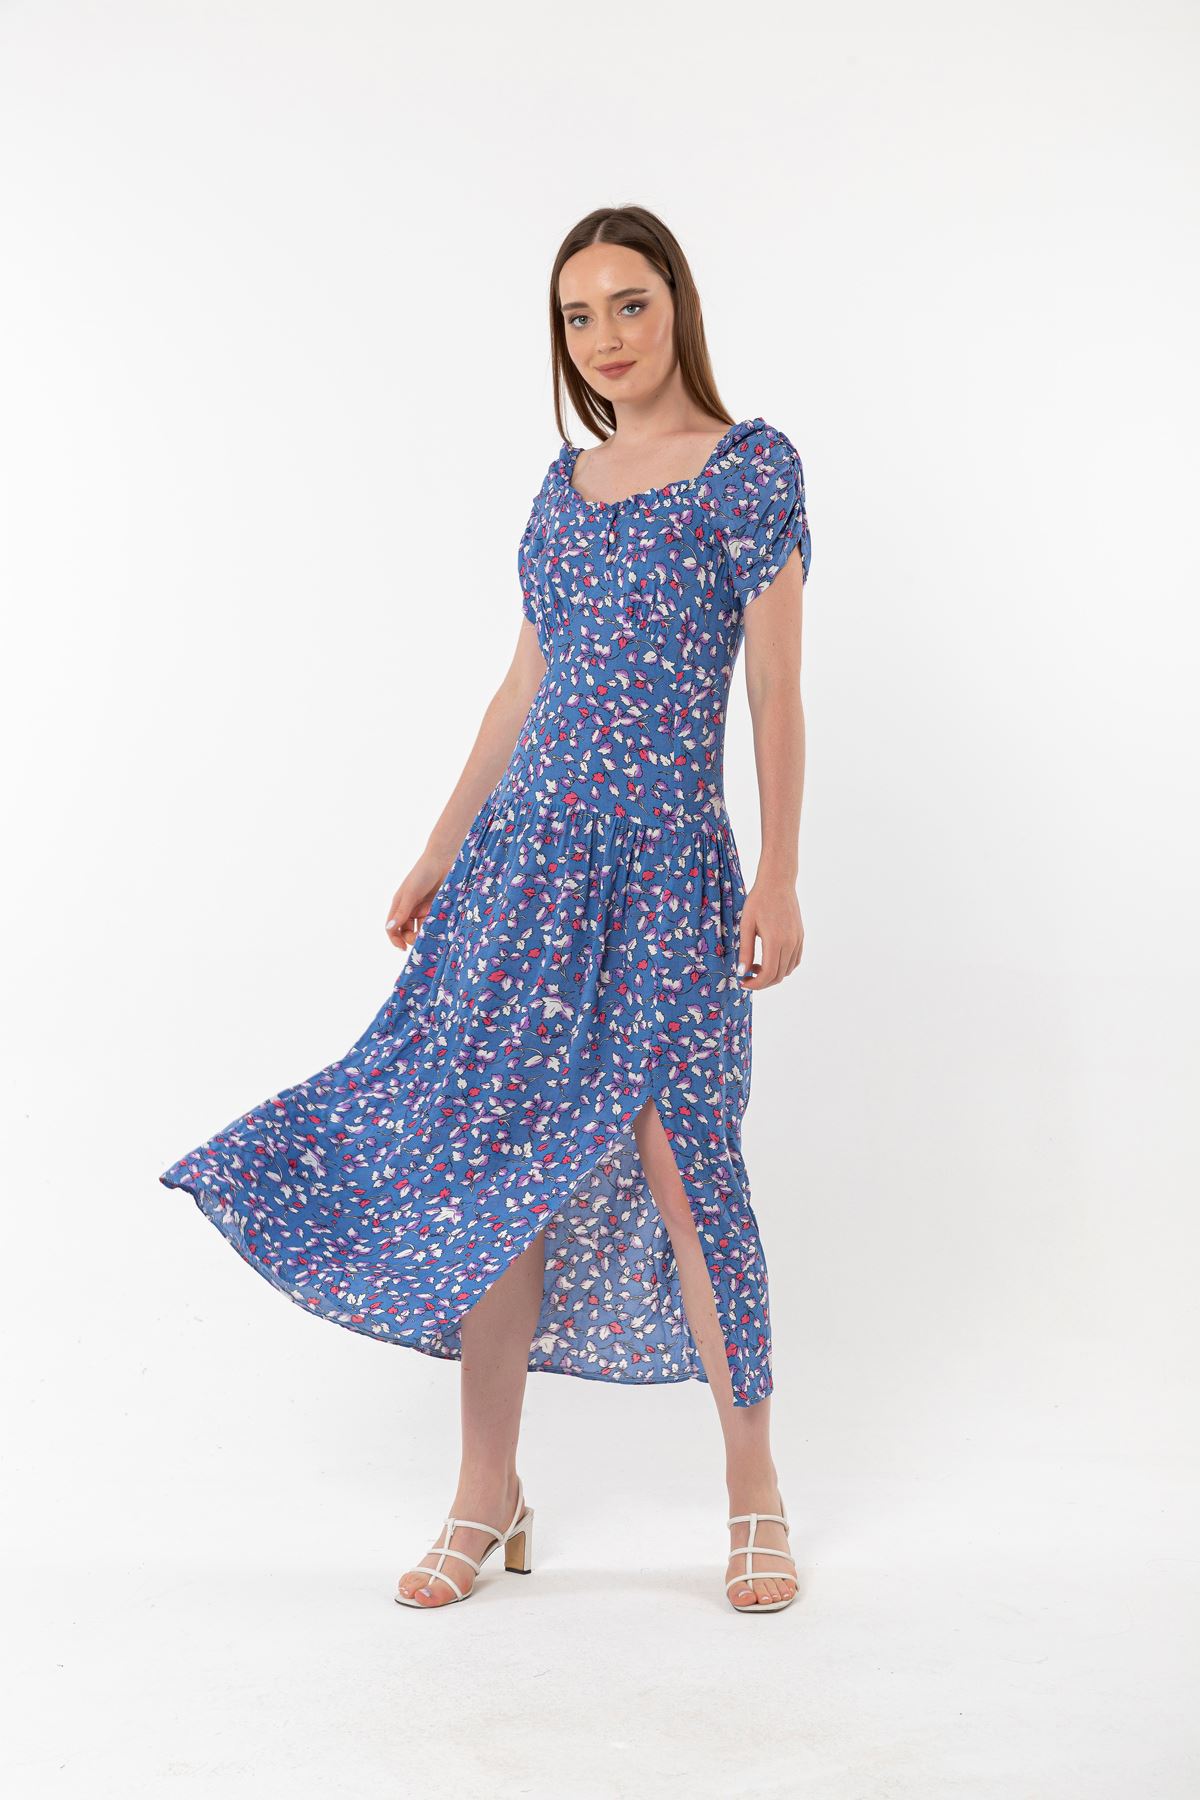 Empirme Kumaş Kare Yaka Çiçek Desen Büzgü Detay Kadın Elbise-Mavi